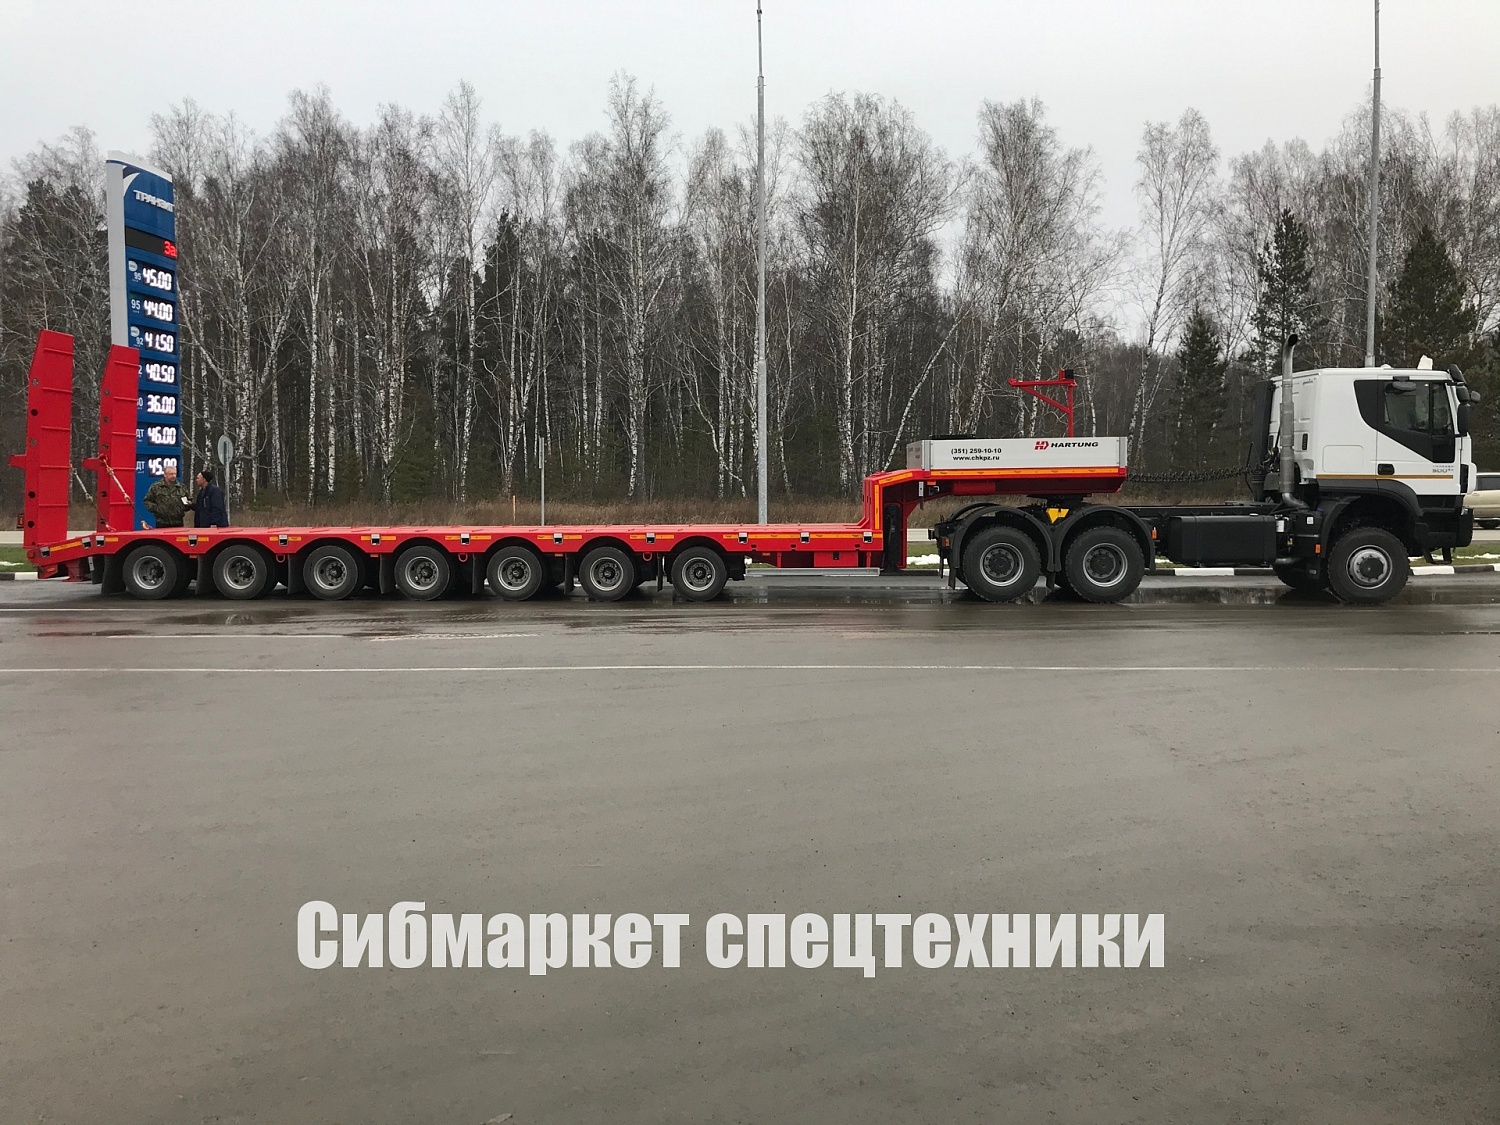 Седельный тягач + трал г/п 90 тонн отгружены в Забайкальский Край